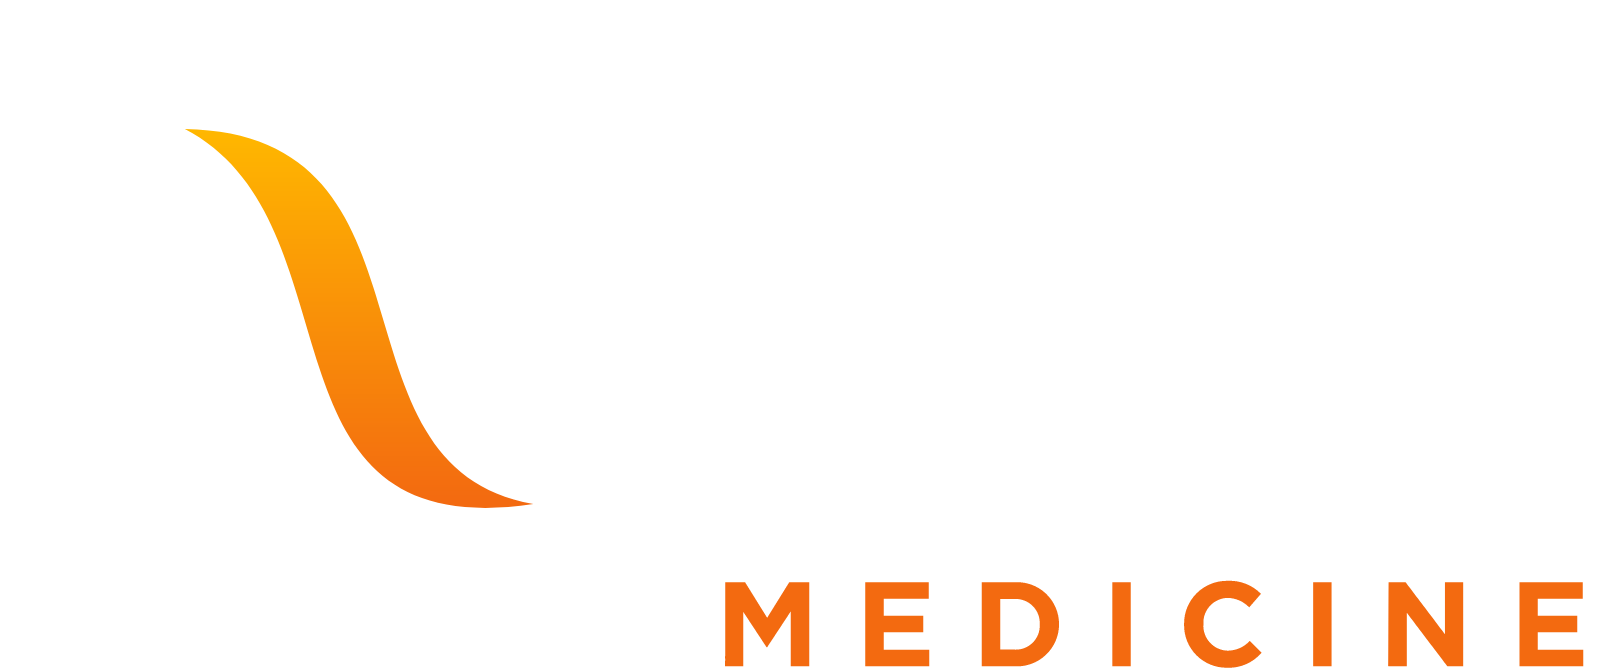 Editas Medicine
 logo large for dark backgrounds (transparent PNG)